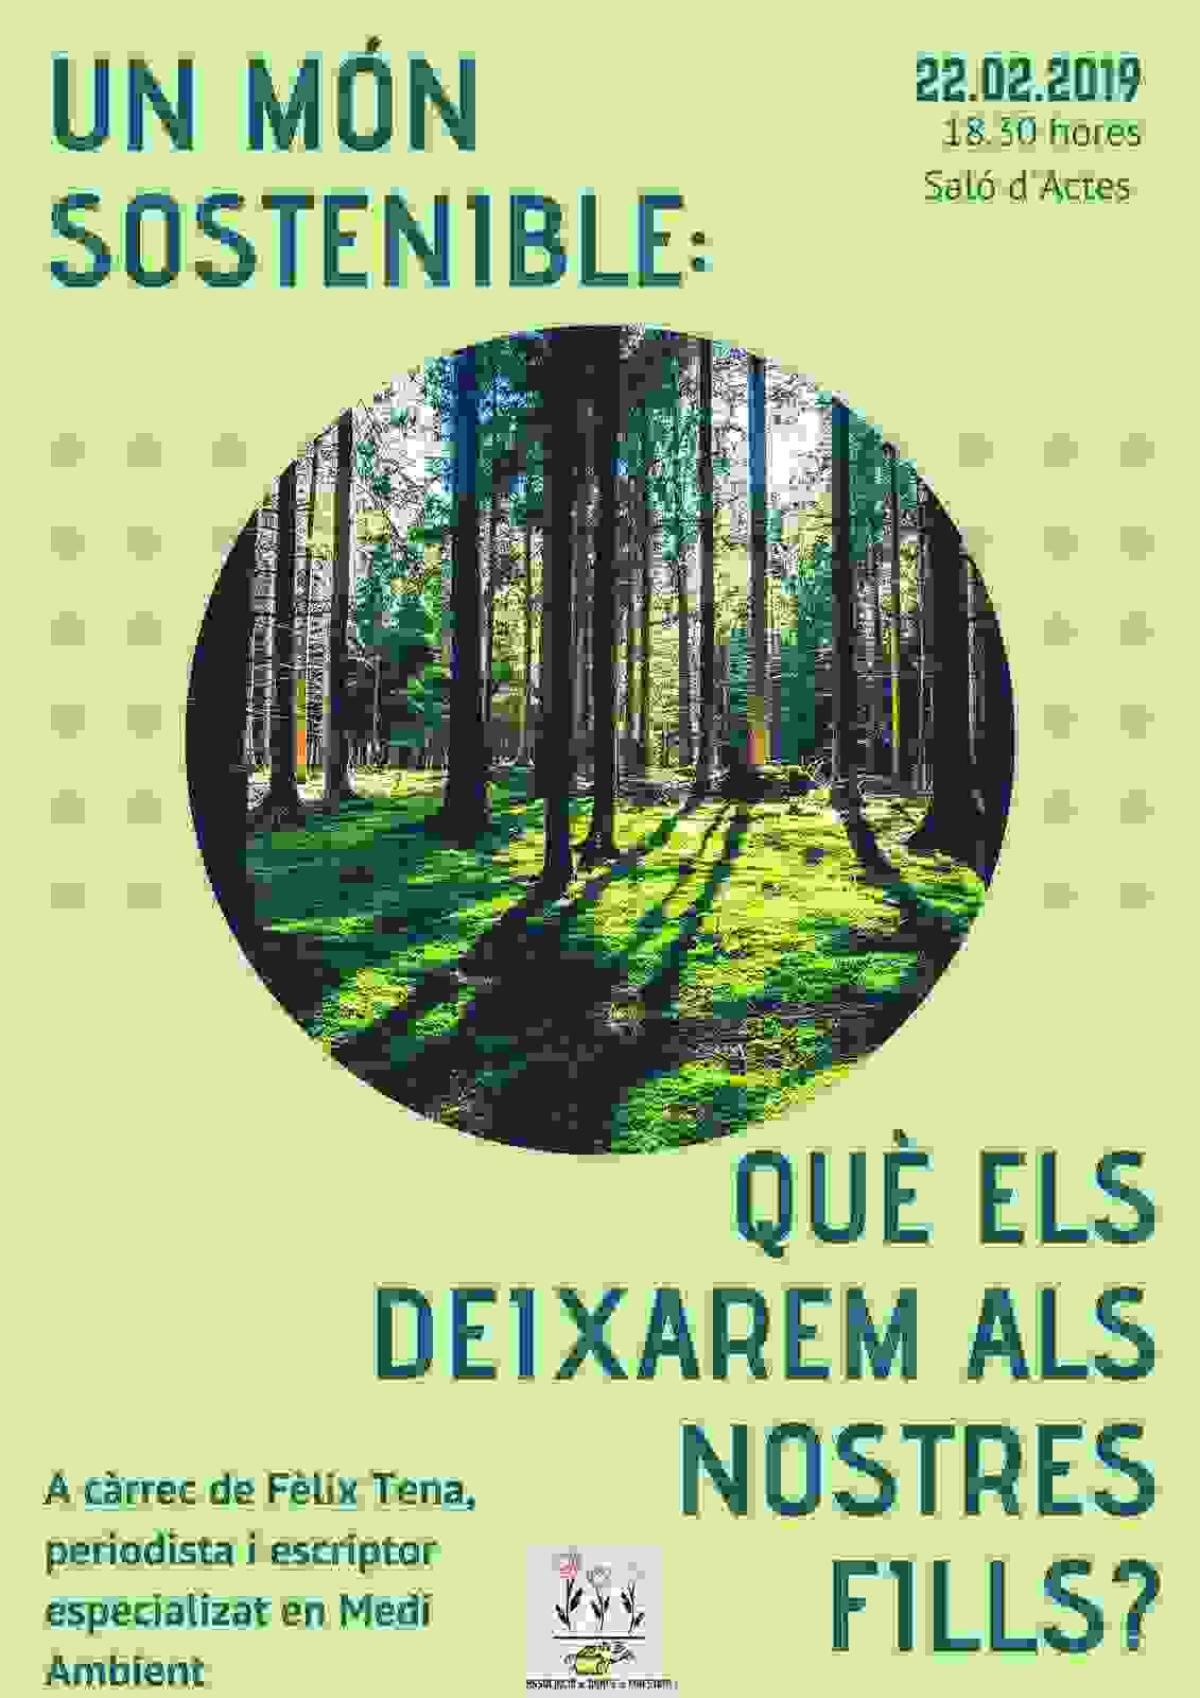  El periodista Félix Tena presenta este viernes en Finestrat su libro “Un món sostenible?”